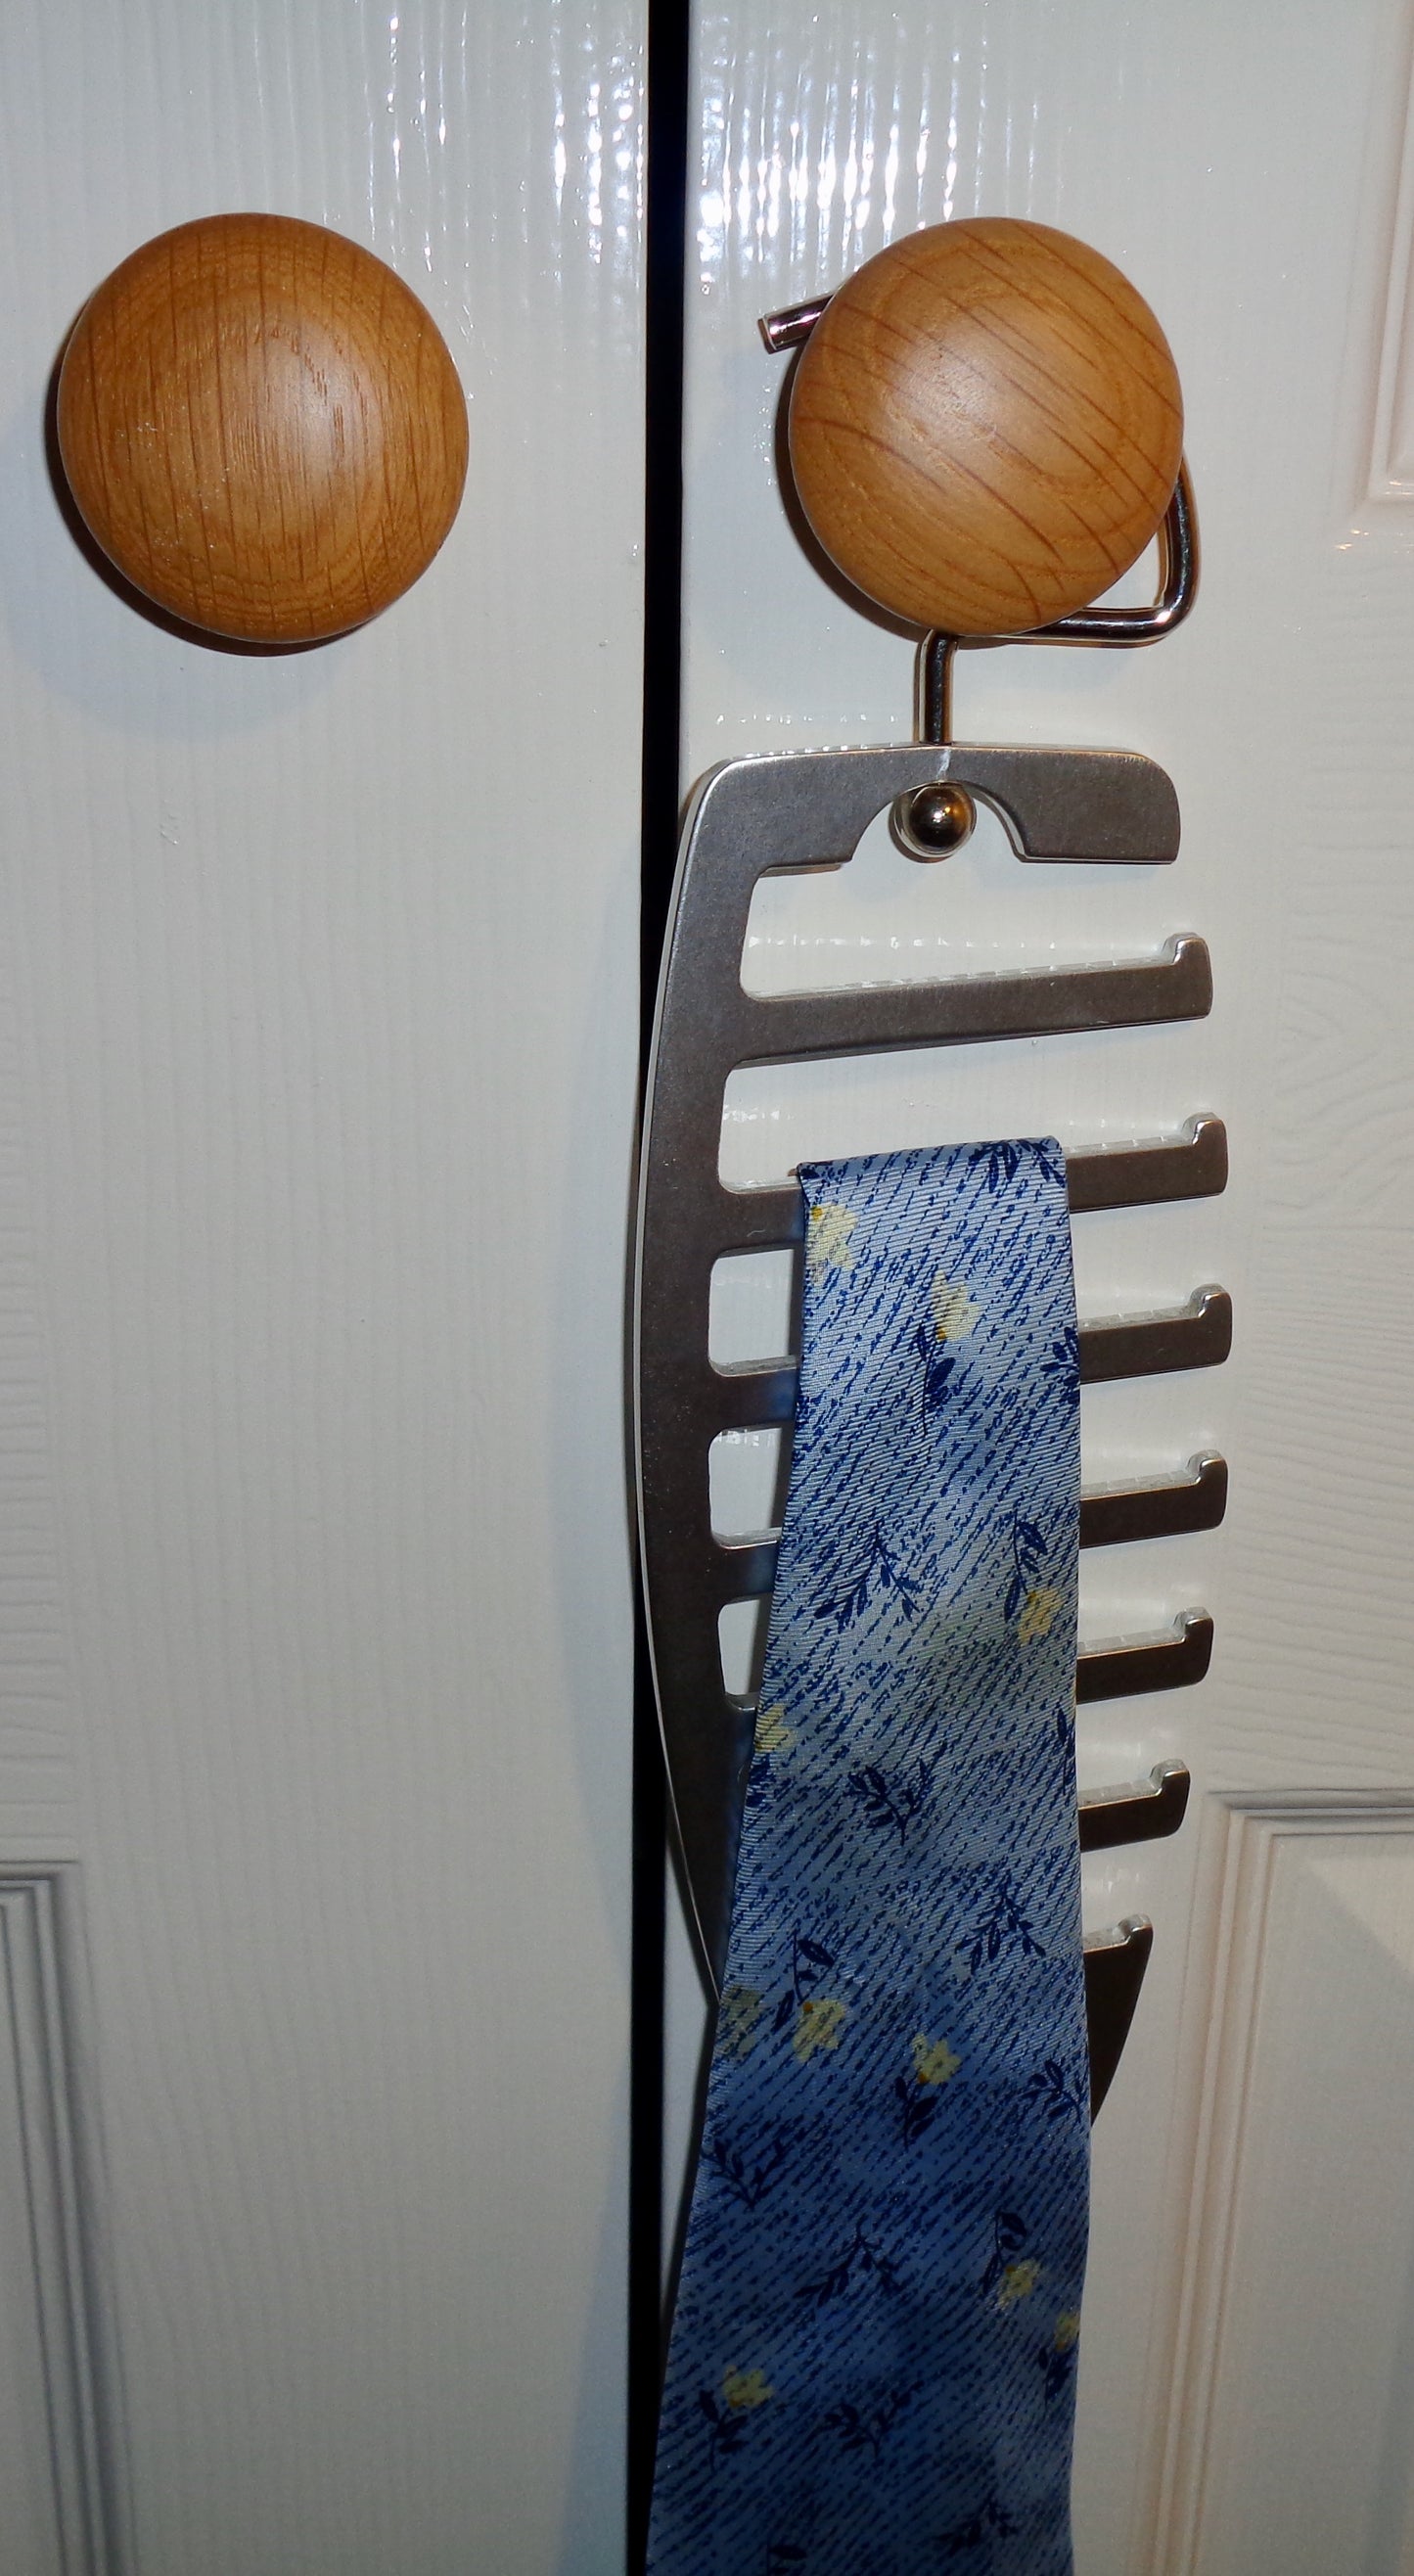 Vintage Metal Tie Rack Hanger. Holds 7 ties